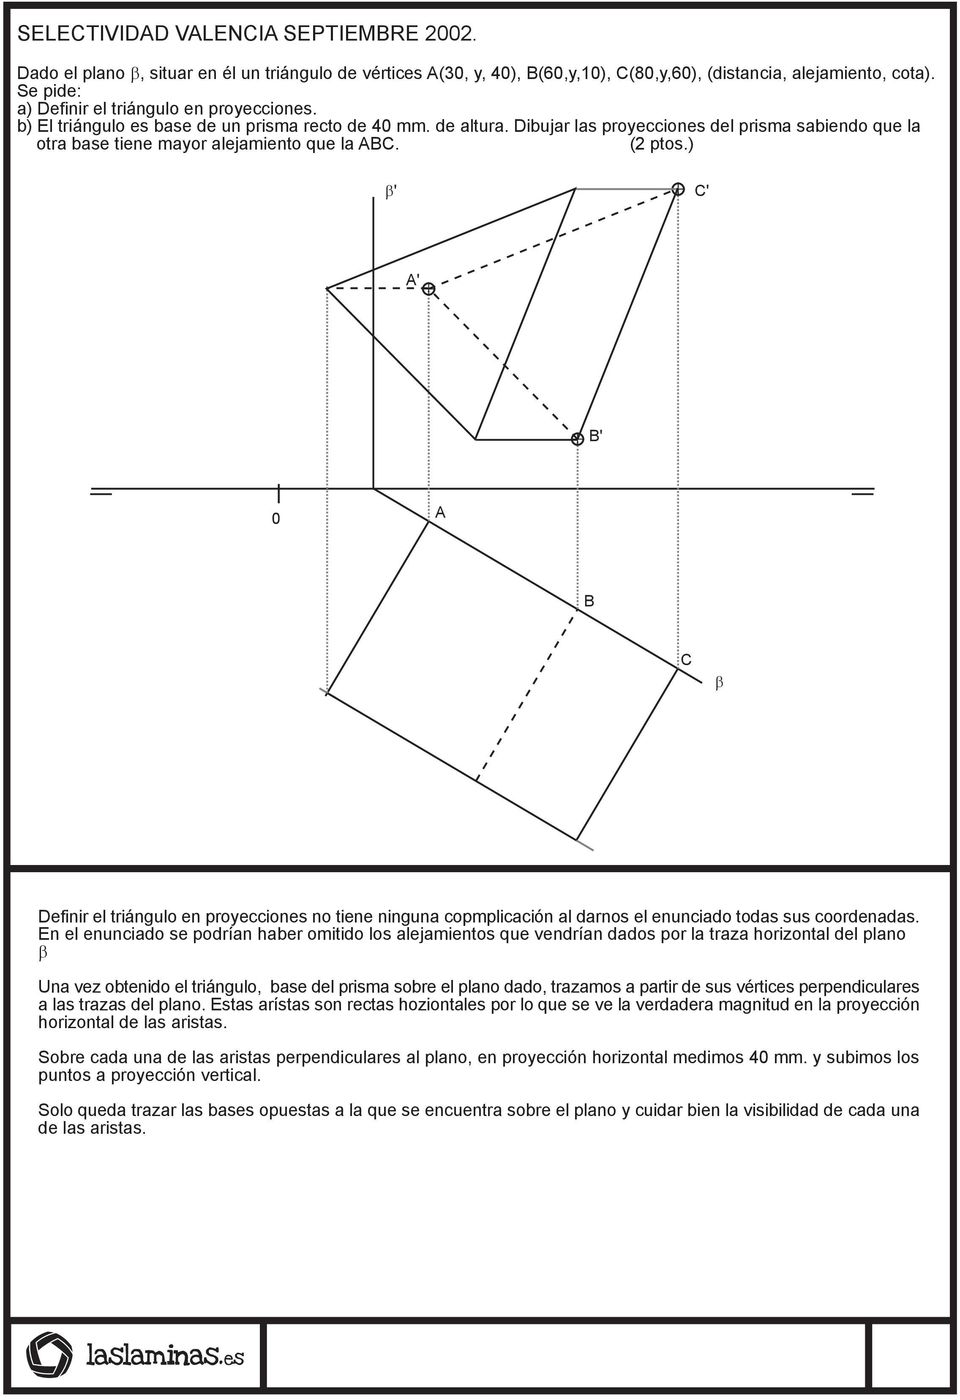 Dibujar las proyecciones del prisma sabiendo que la otra base tiene mayor alejamiento que la ABC. (2 ptos.